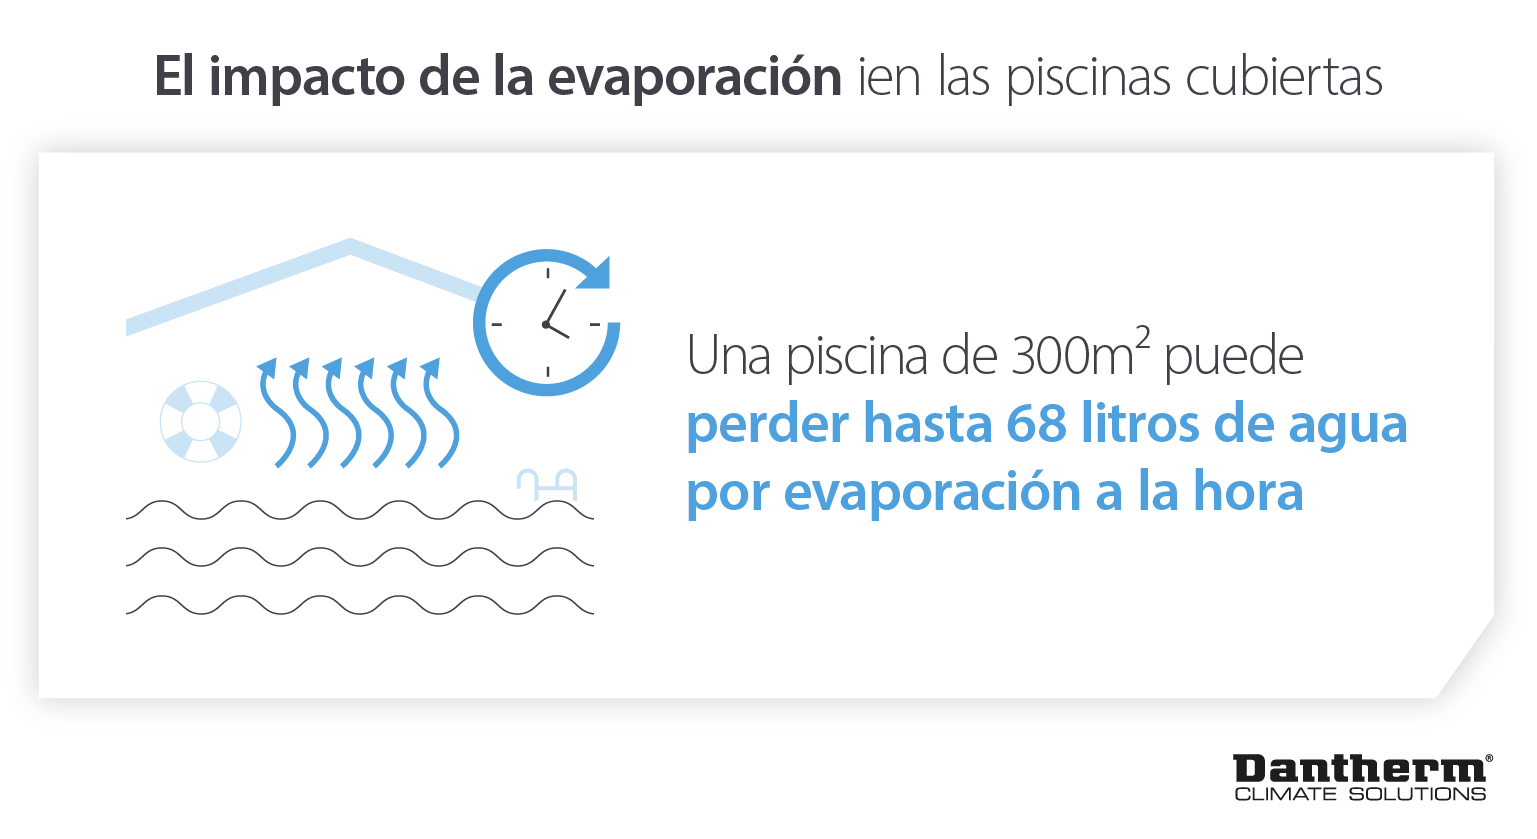 Impacto de la evaporación del agua de las piscinas cubiertas: se pierden hasta 68 litros por hora en los centros de ocio - Infografía